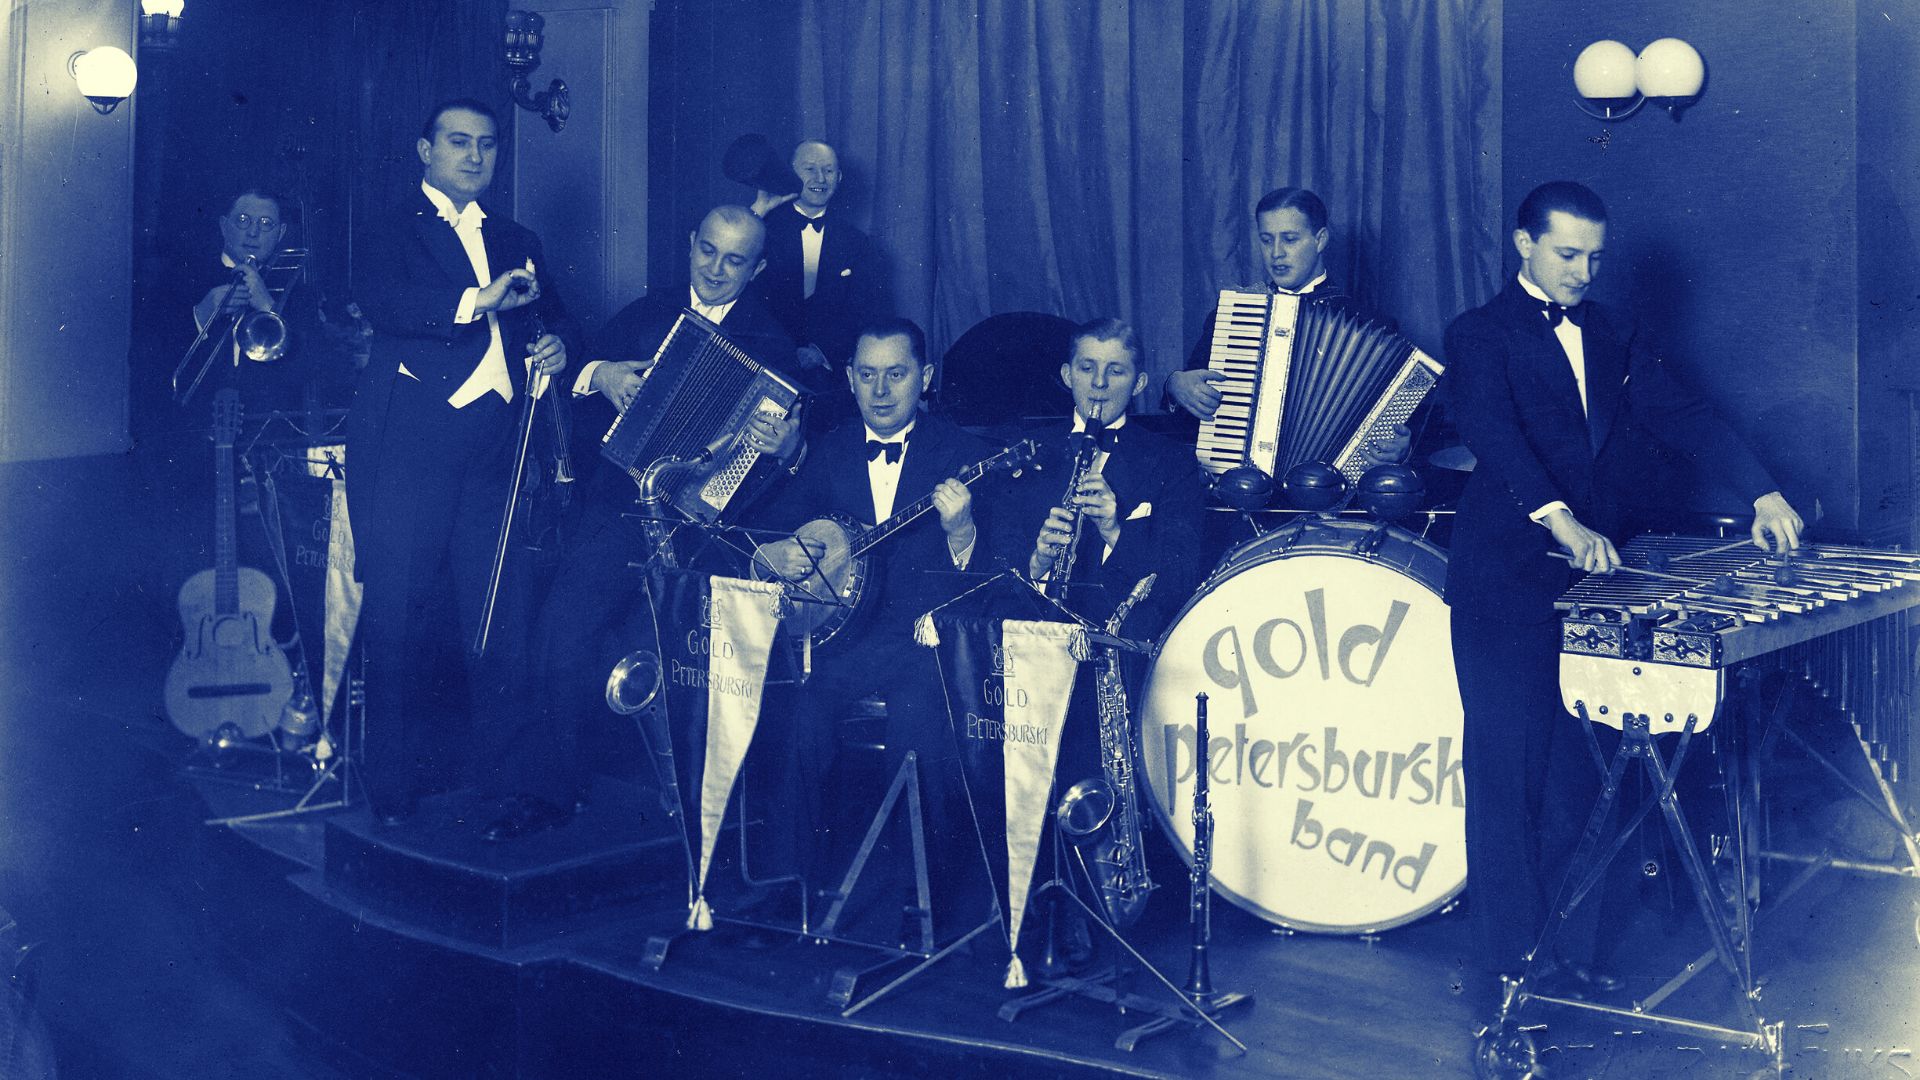 Czarno-biała fotografia w ocieniach błękitu przedstawia muzyków orkiestry Gold Petersburski Band podczas występu